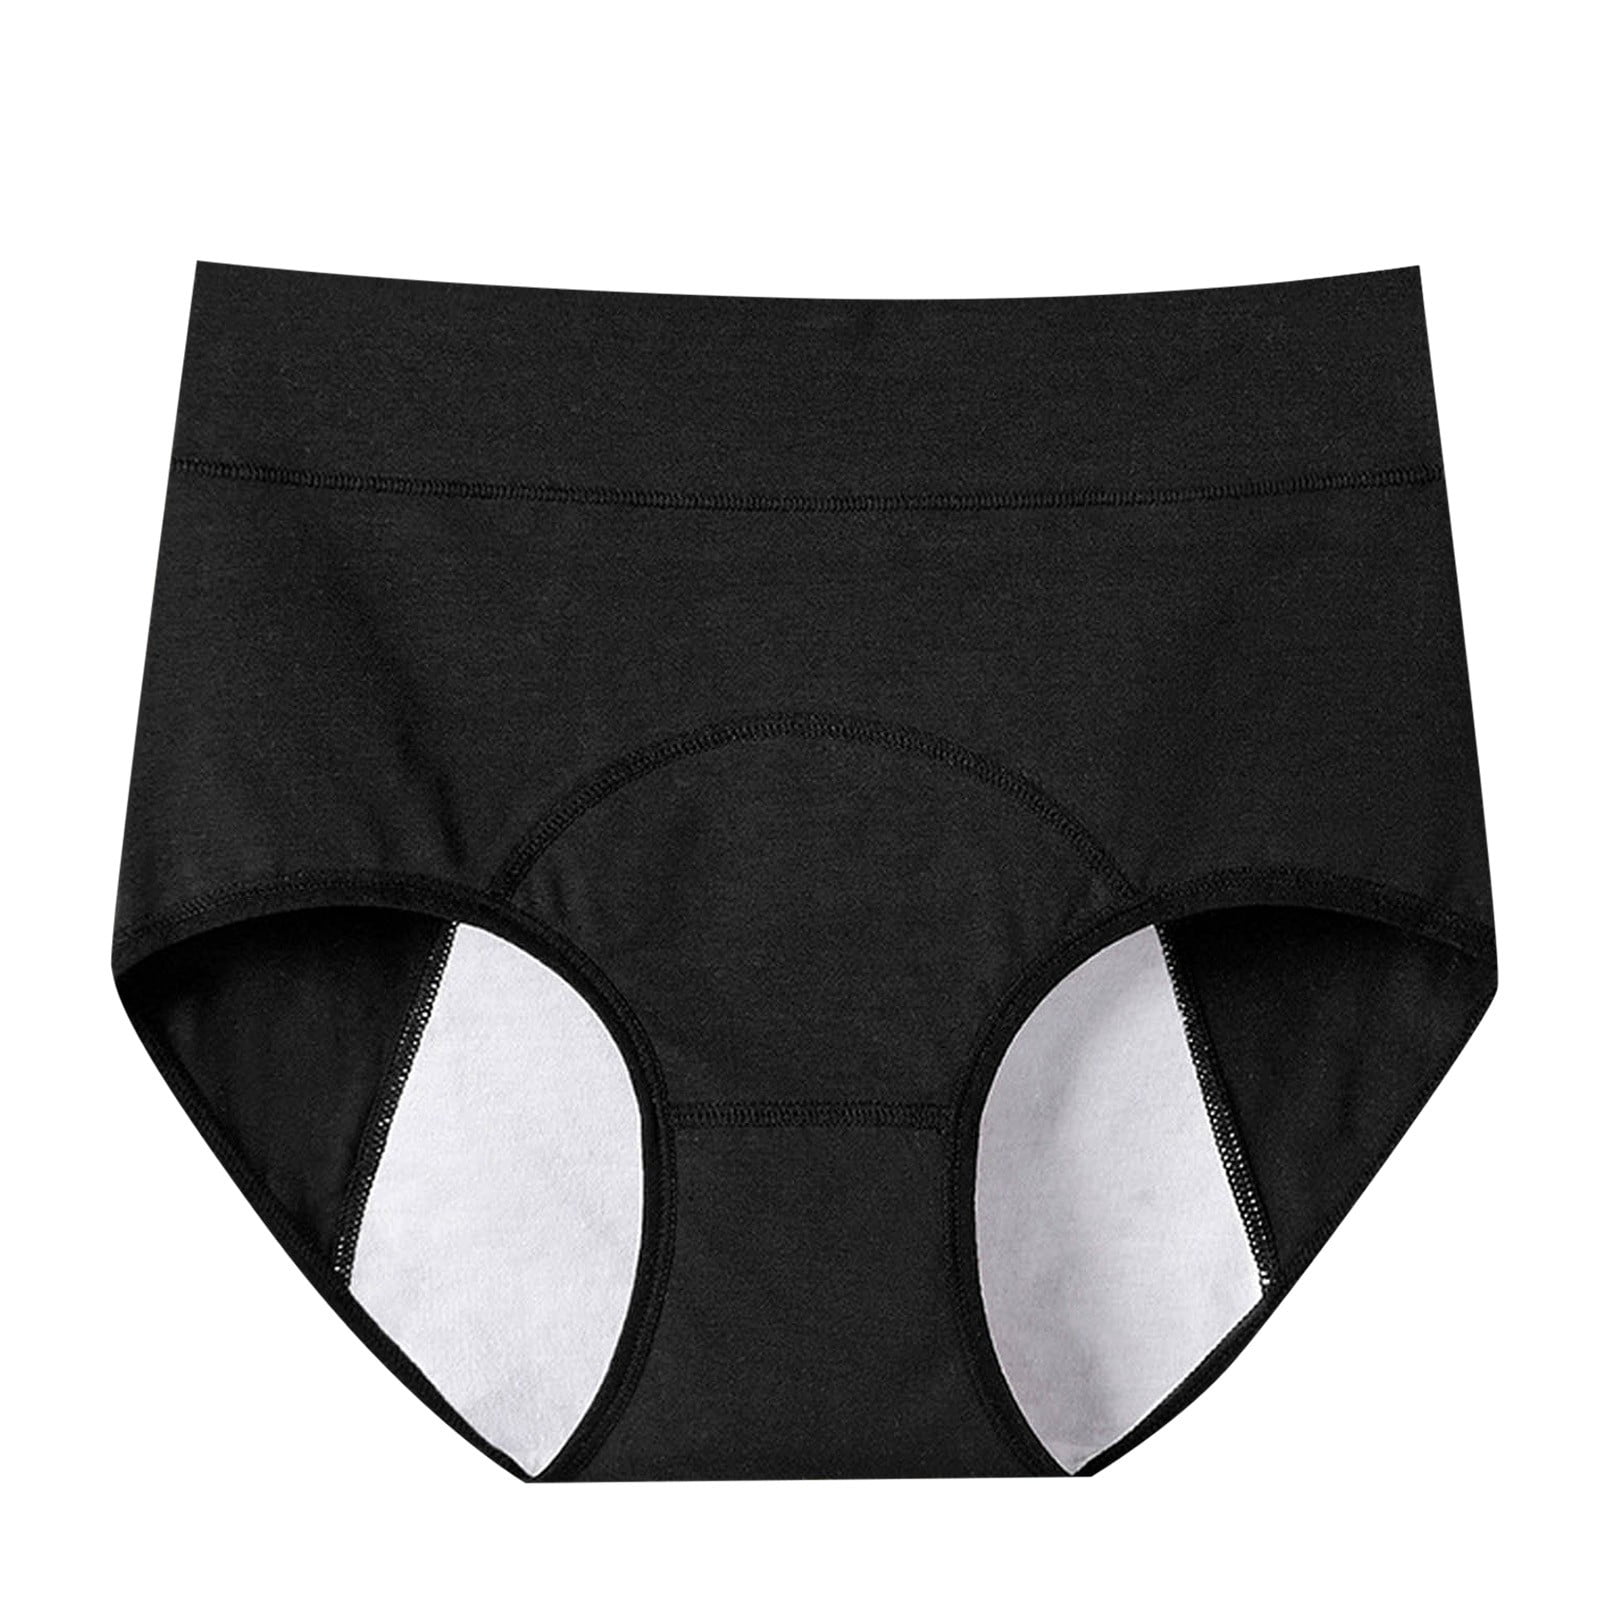 ZMHEGW Packs Seamless Underwear For Women Menstrual Swimming Trunks Leak Proof Layer